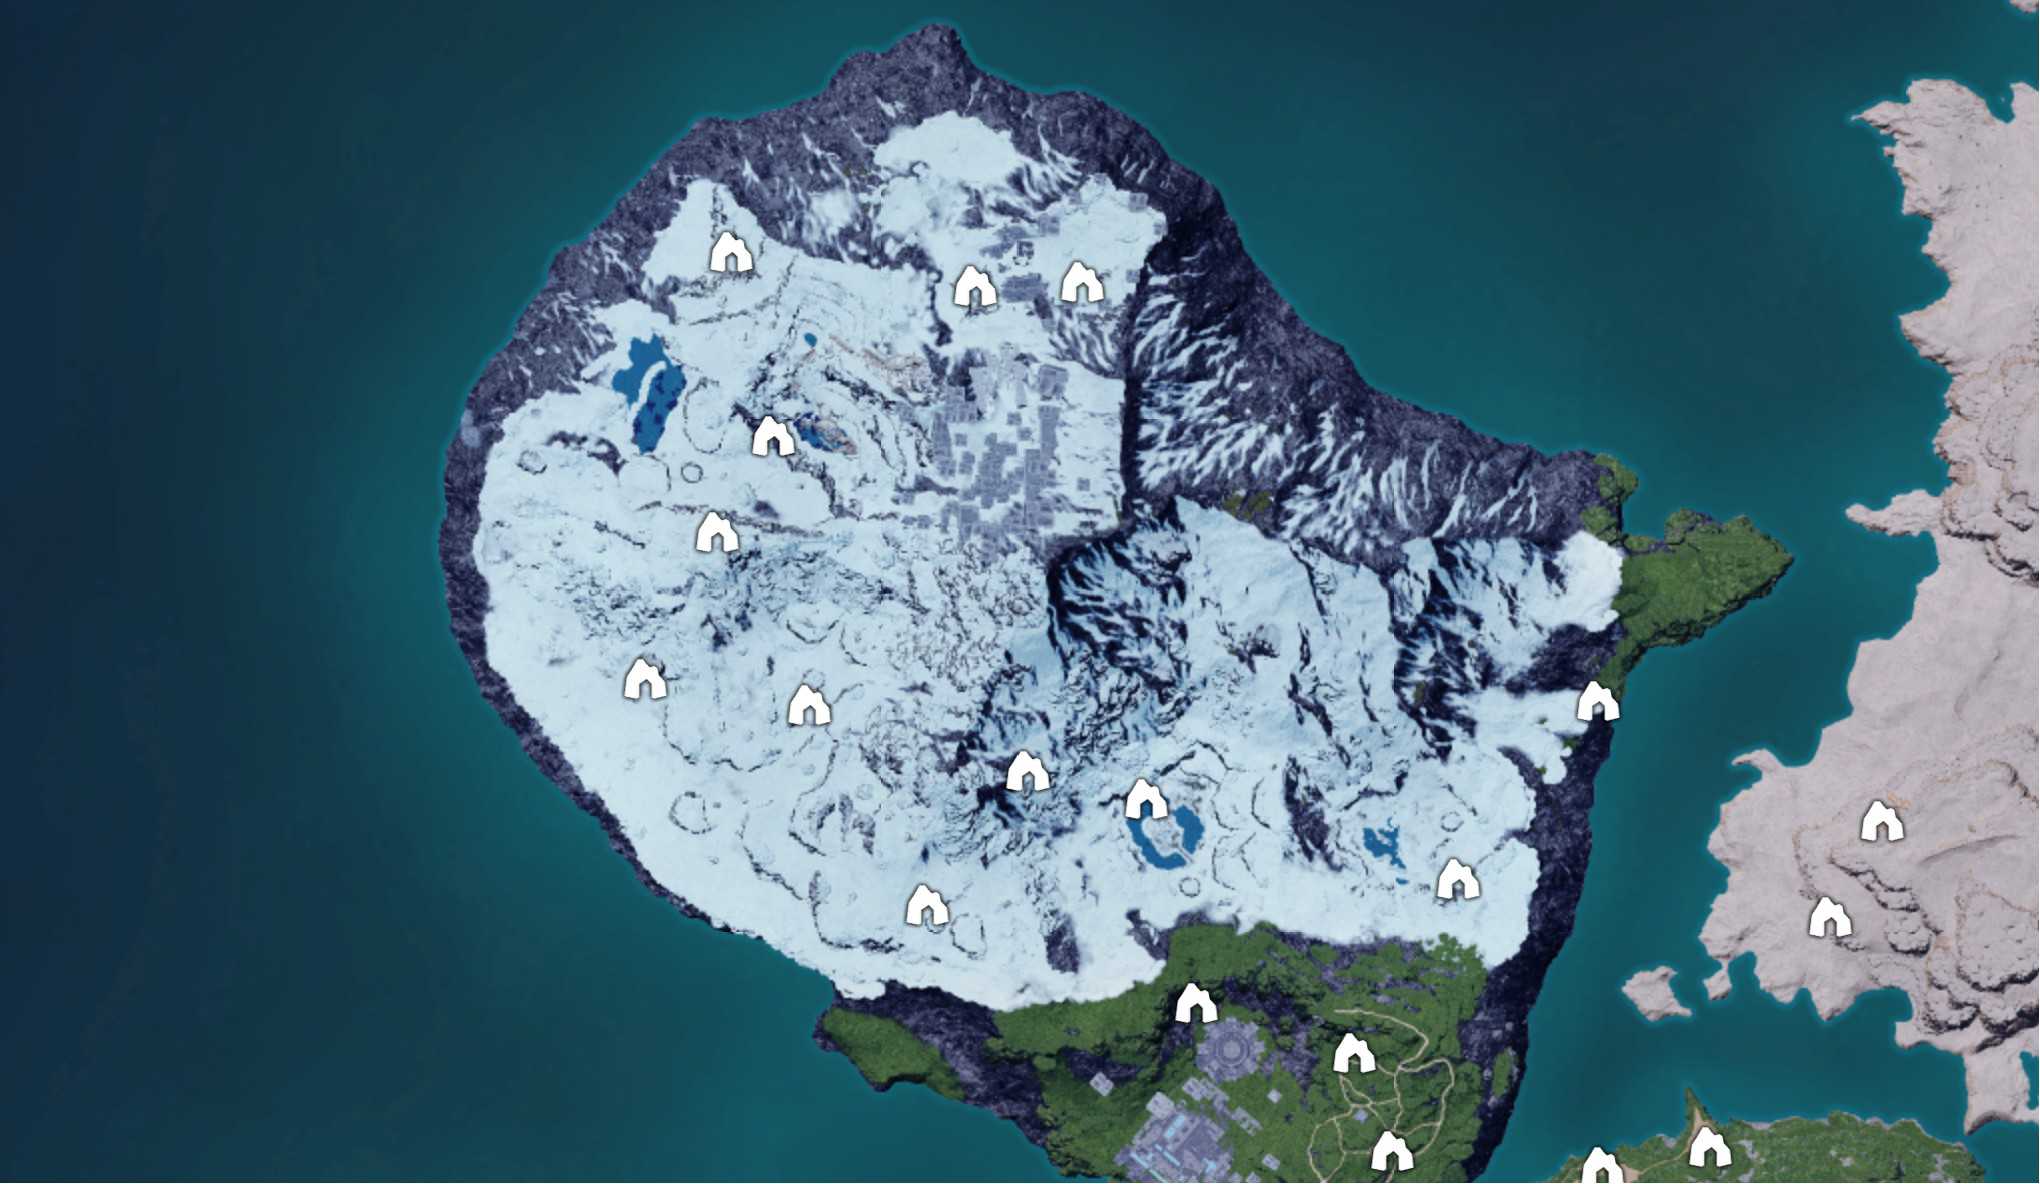 Mappa dei sotterranei della regione del ghiacciaio Palworld